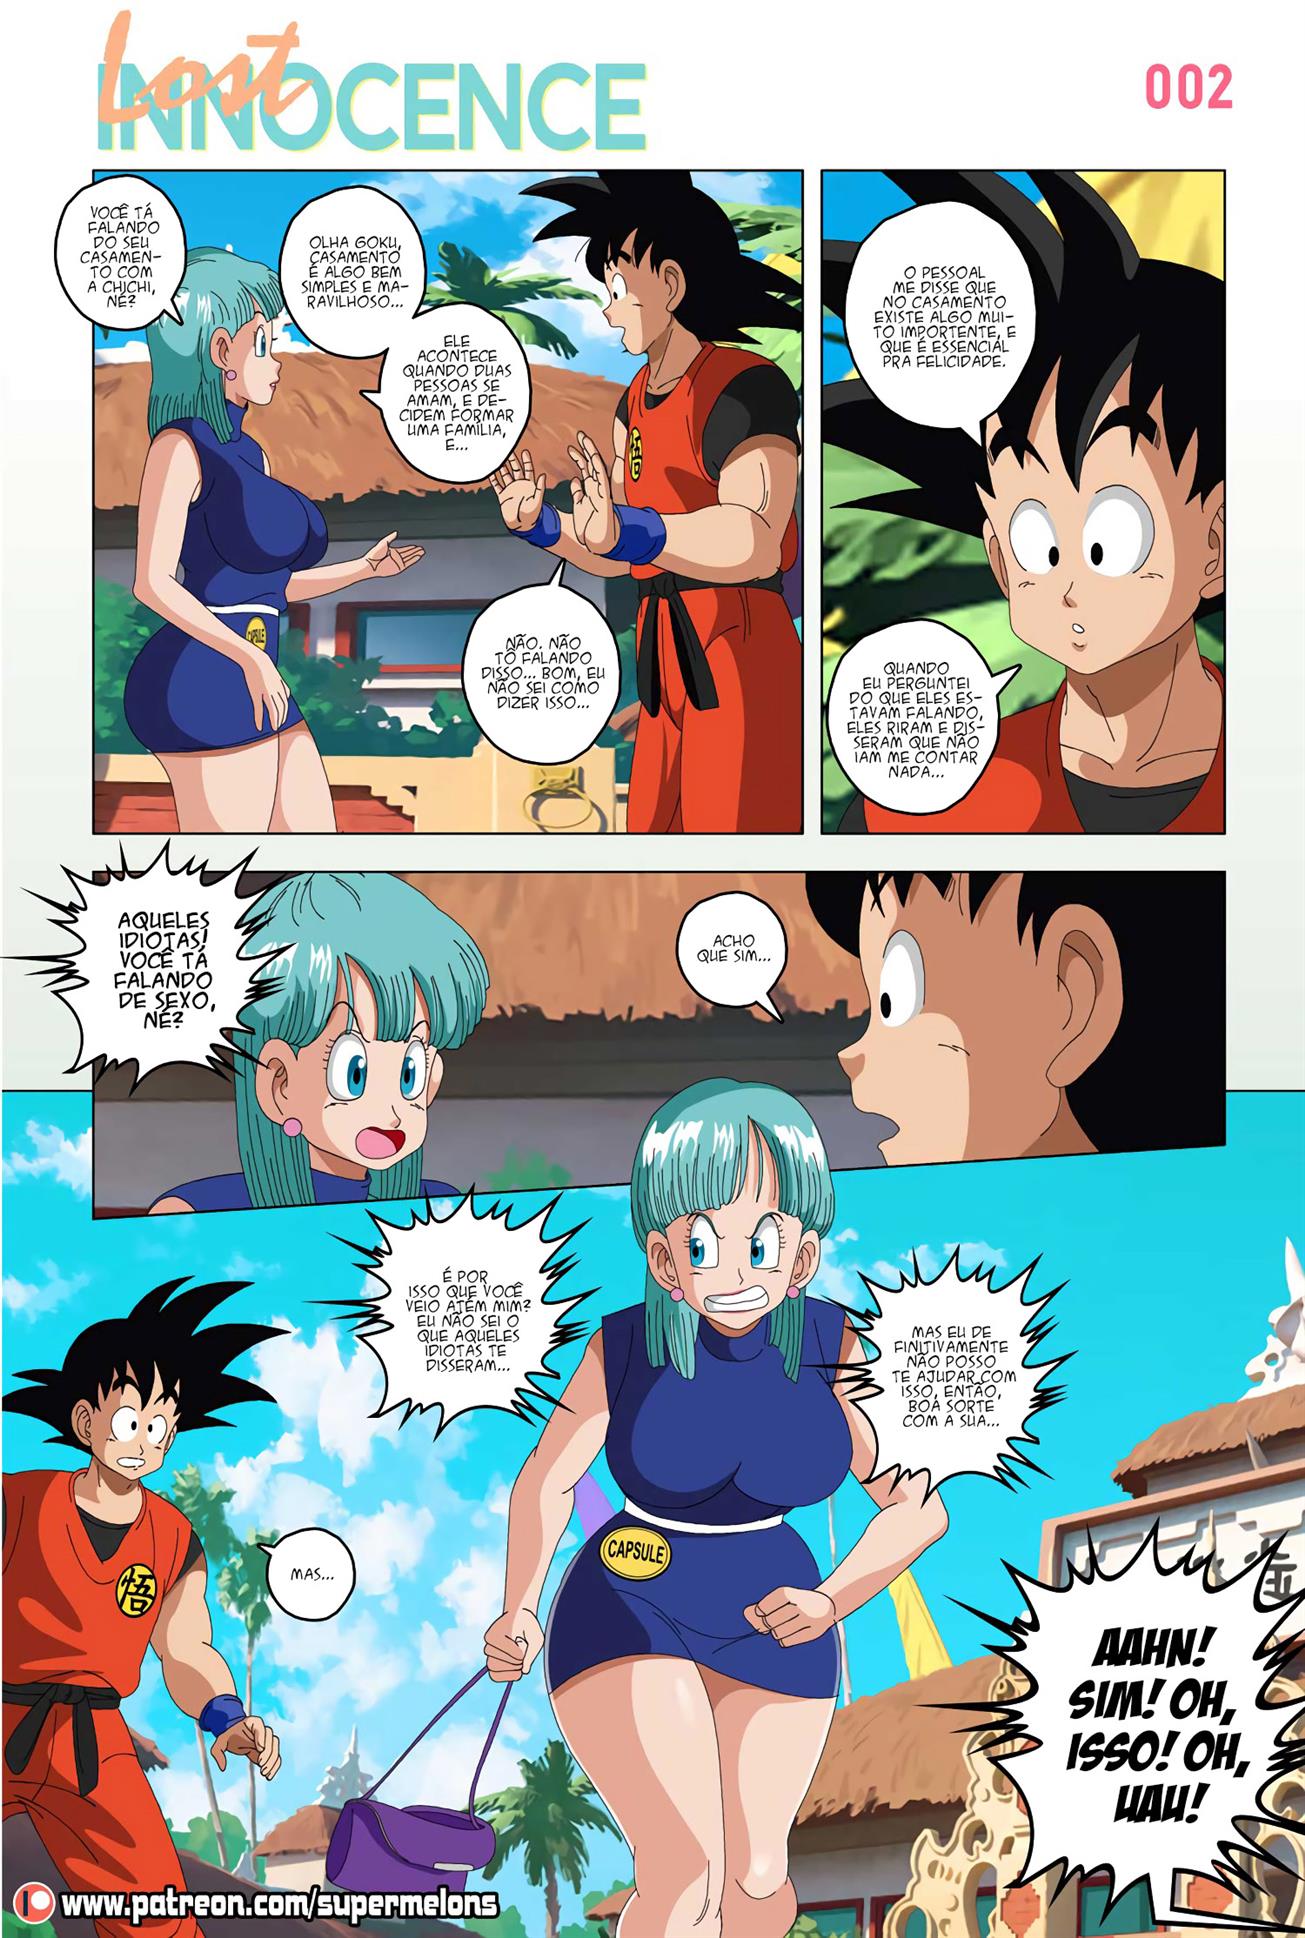 Tirando a inocência de Goku